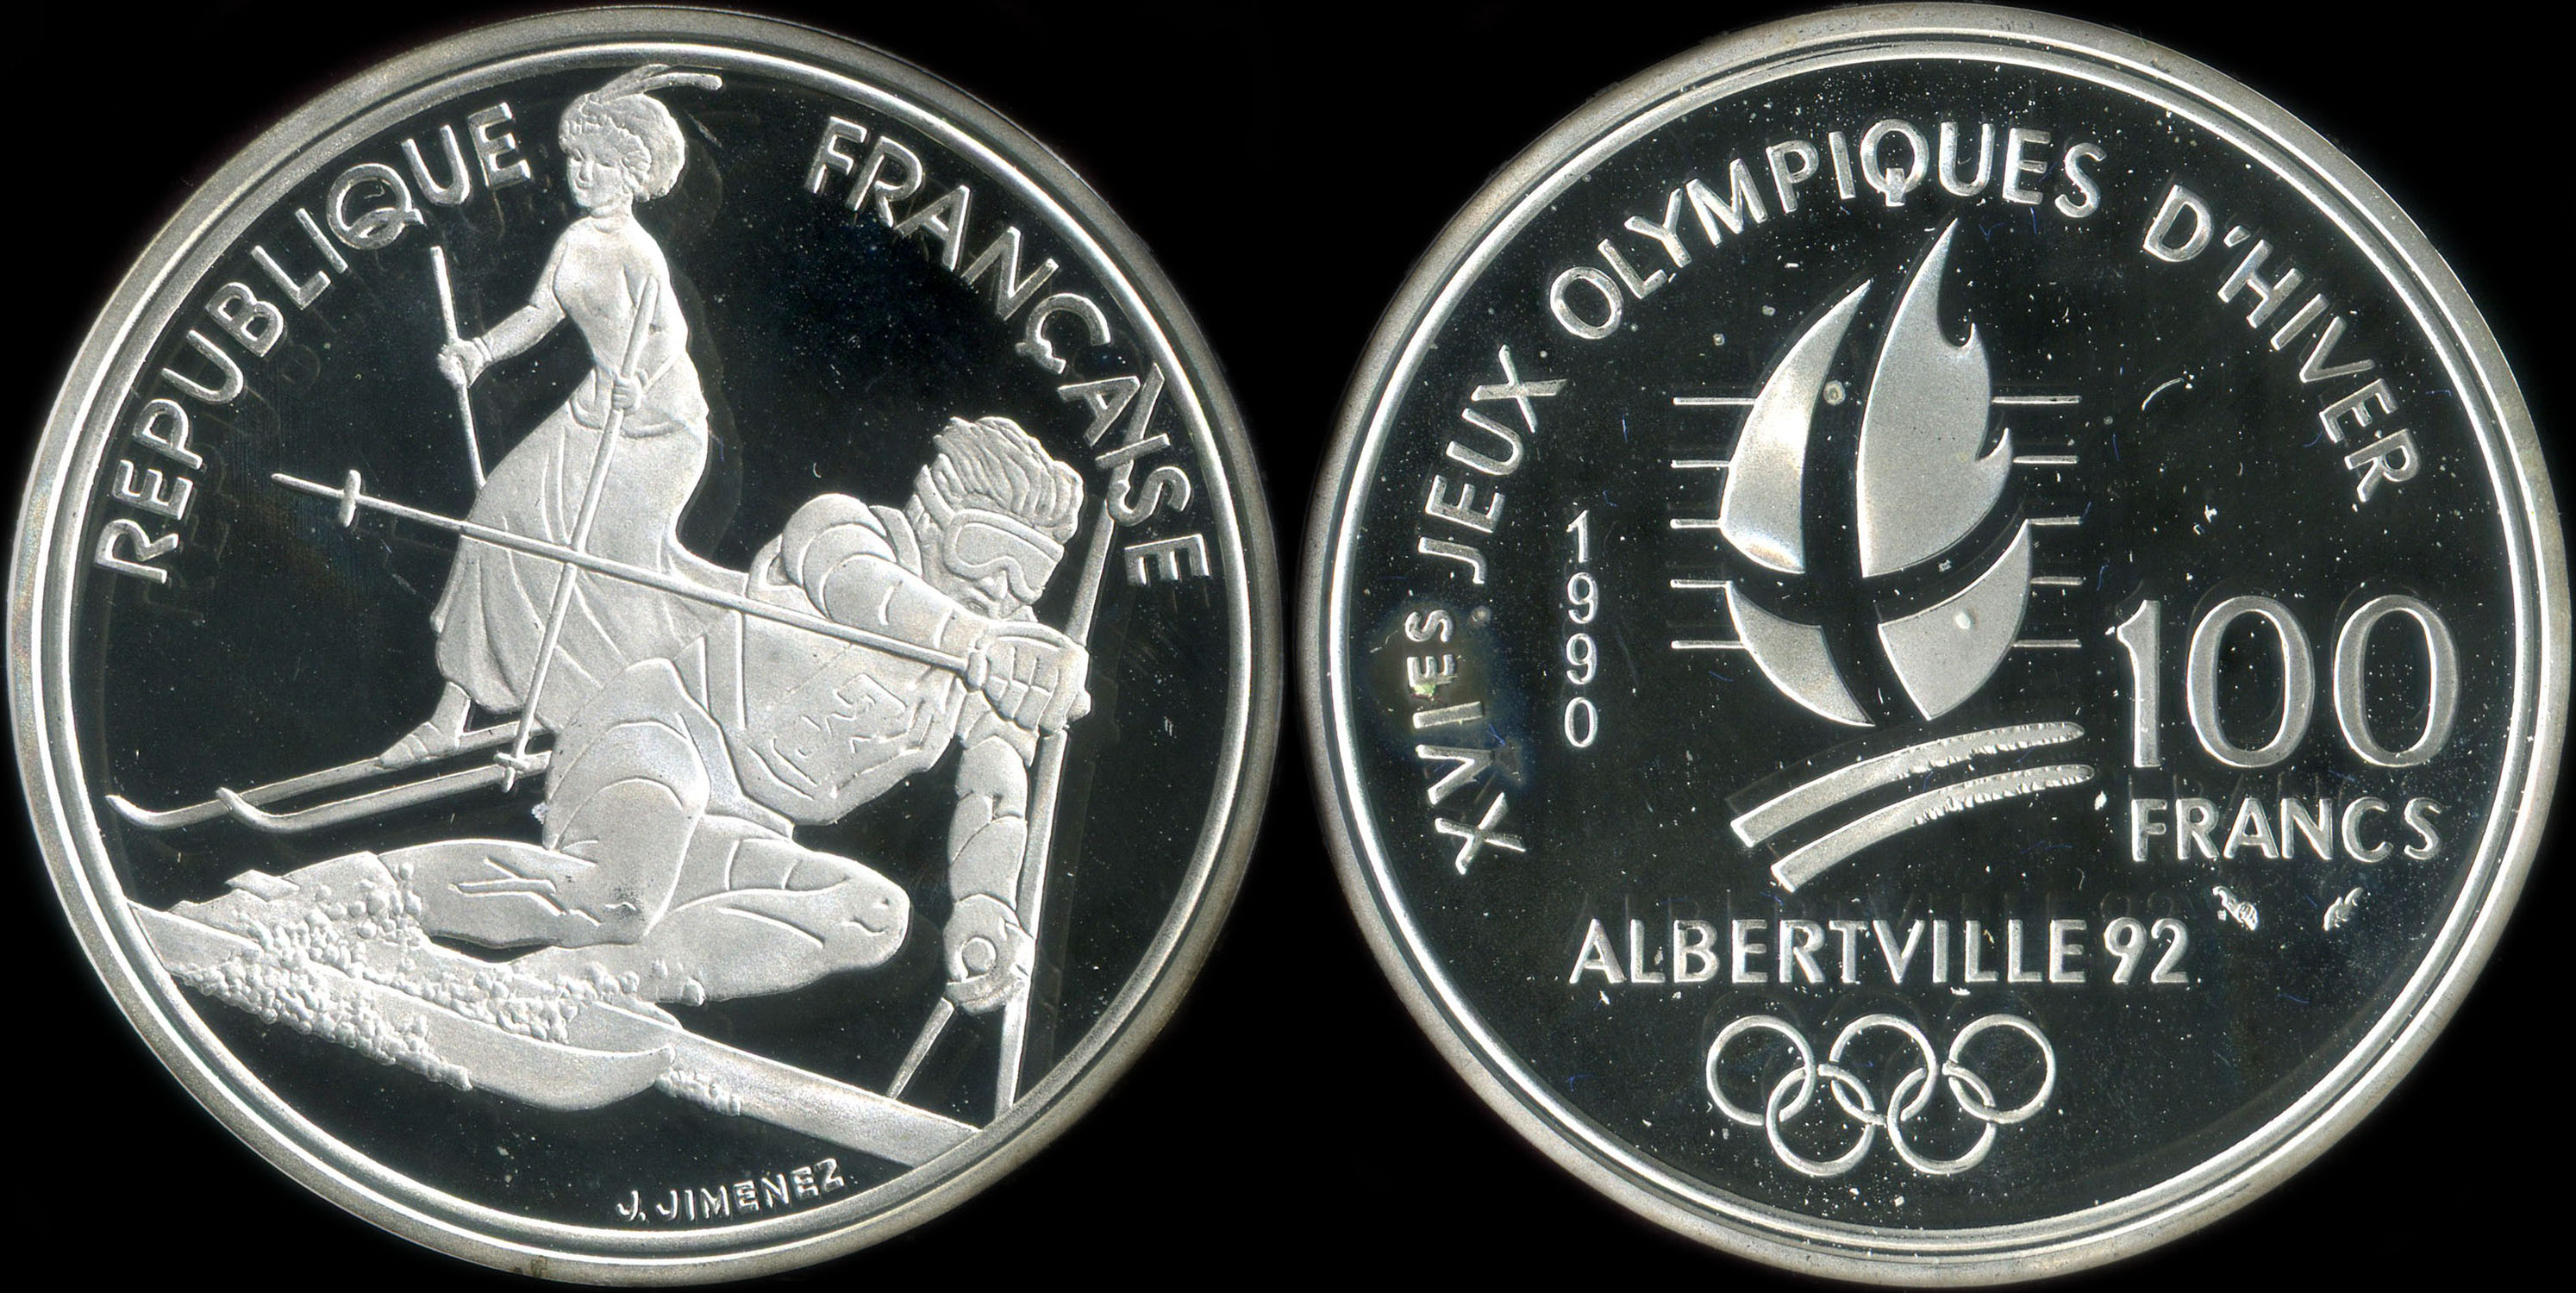 Pièce de 100 francs 1990 - XVIes Jeux Olympiques d'Hiver - Albertville 92 - Slalom Moderne et Belle Epoque